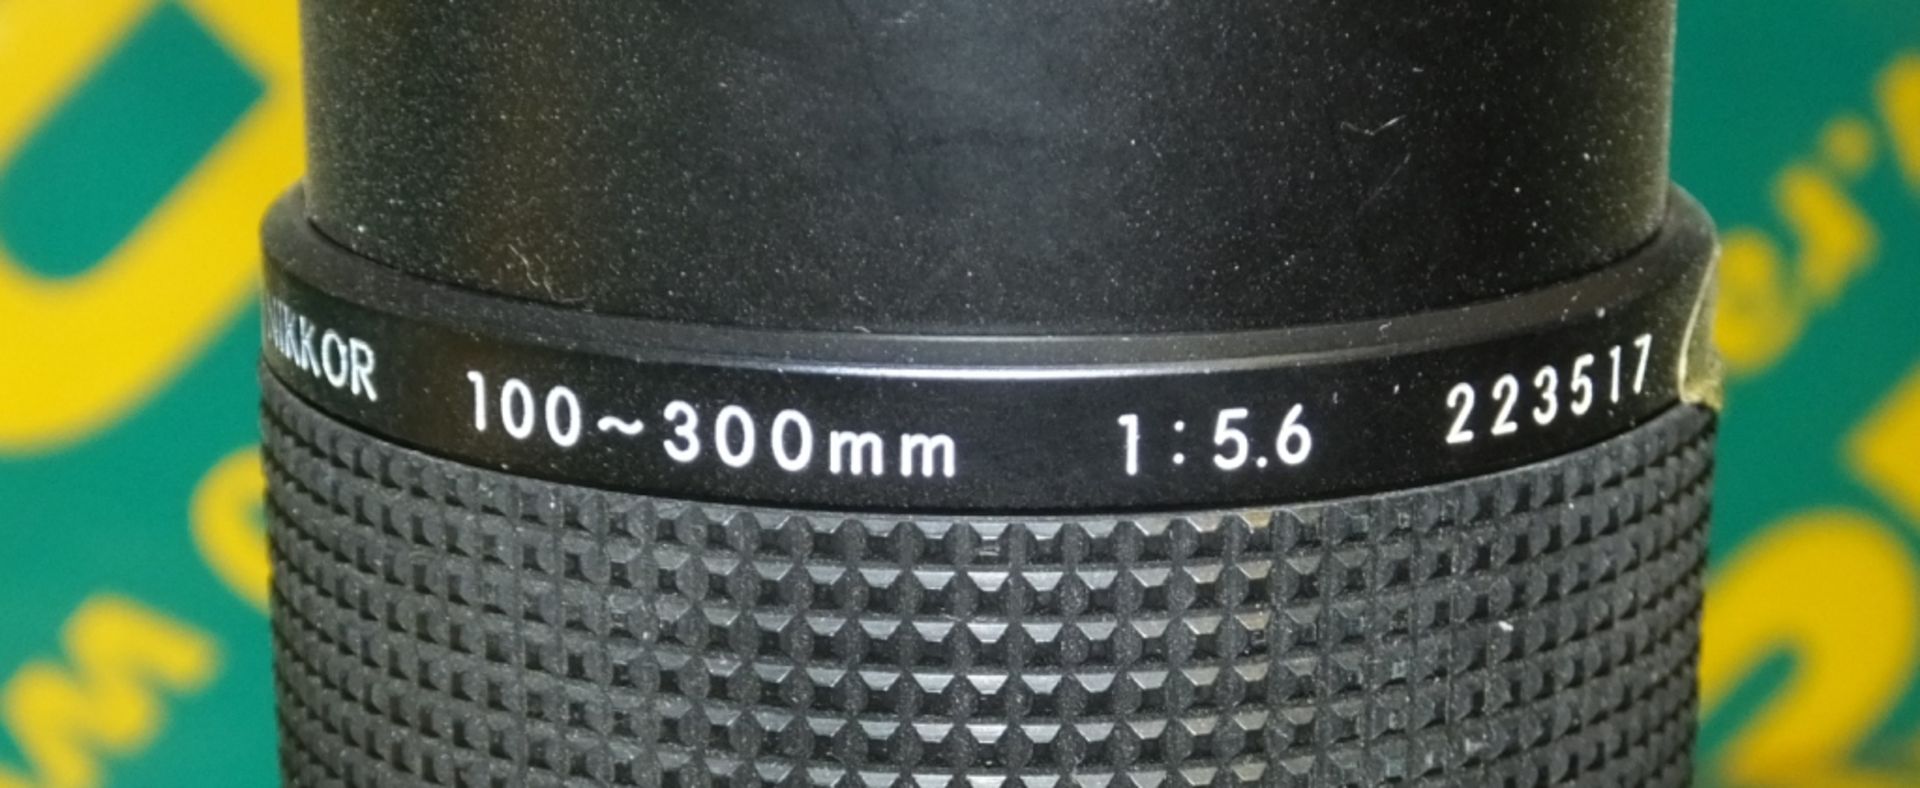 Nikon Zoom Nikkor Lens - 100-300mm - 1.56 - Image 2 of 4